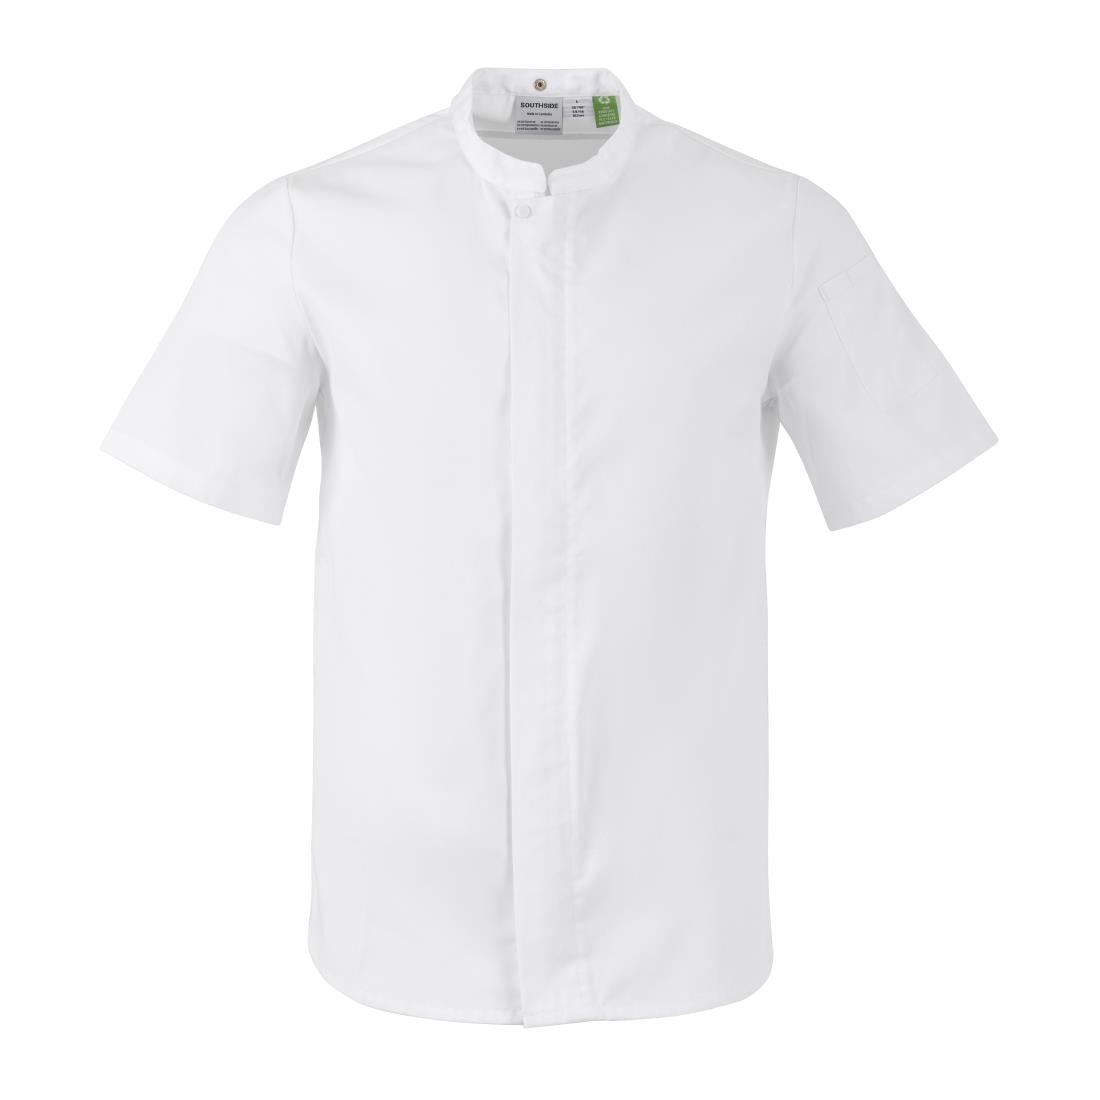 BA116-M Southside Harlem Chefs Jacket White Short Sleeve Mesh Size M